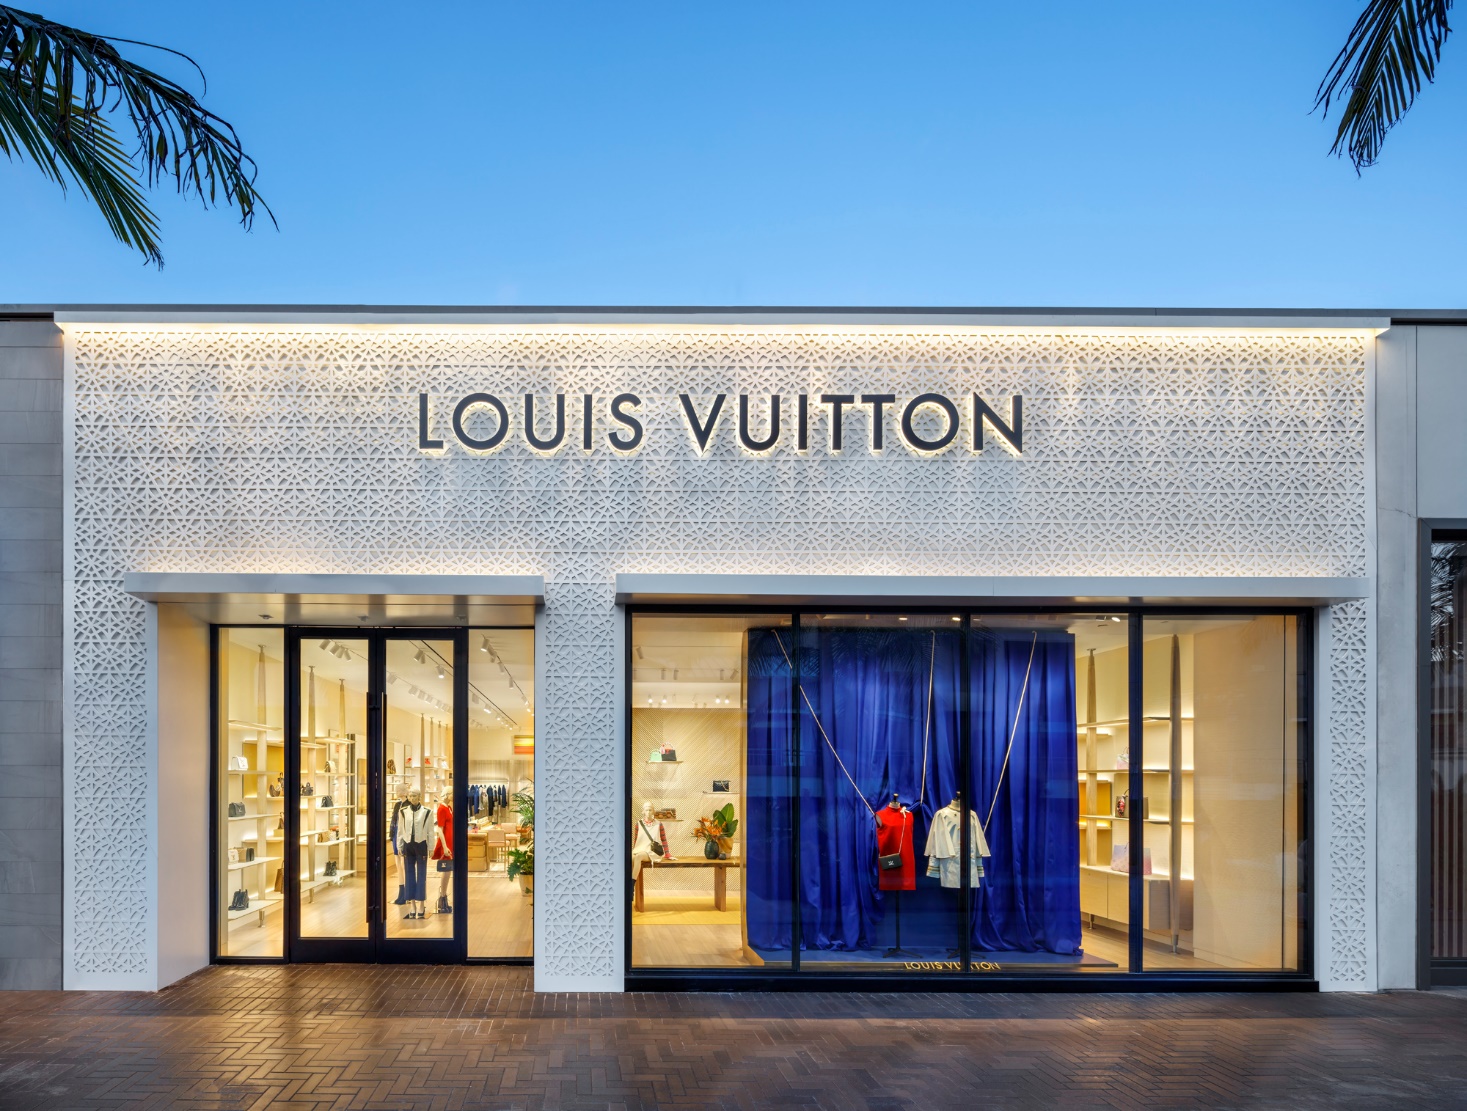 Louis Vuitton has opened its doors